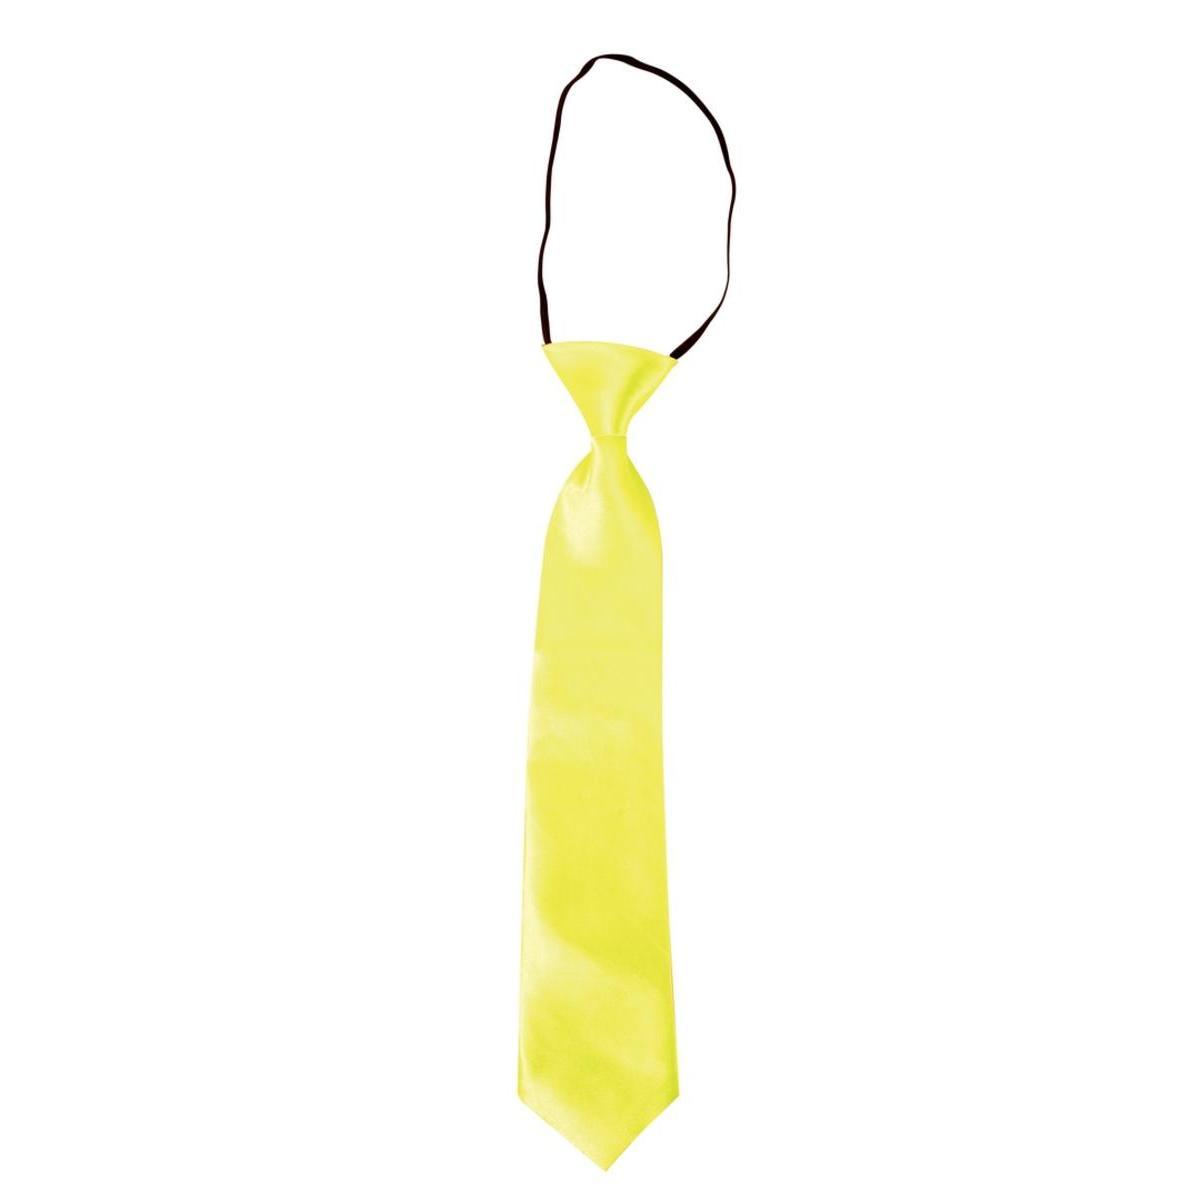 Cravate fluo - L 39 x l 10 cm - Jaune - PTIT CLOWN